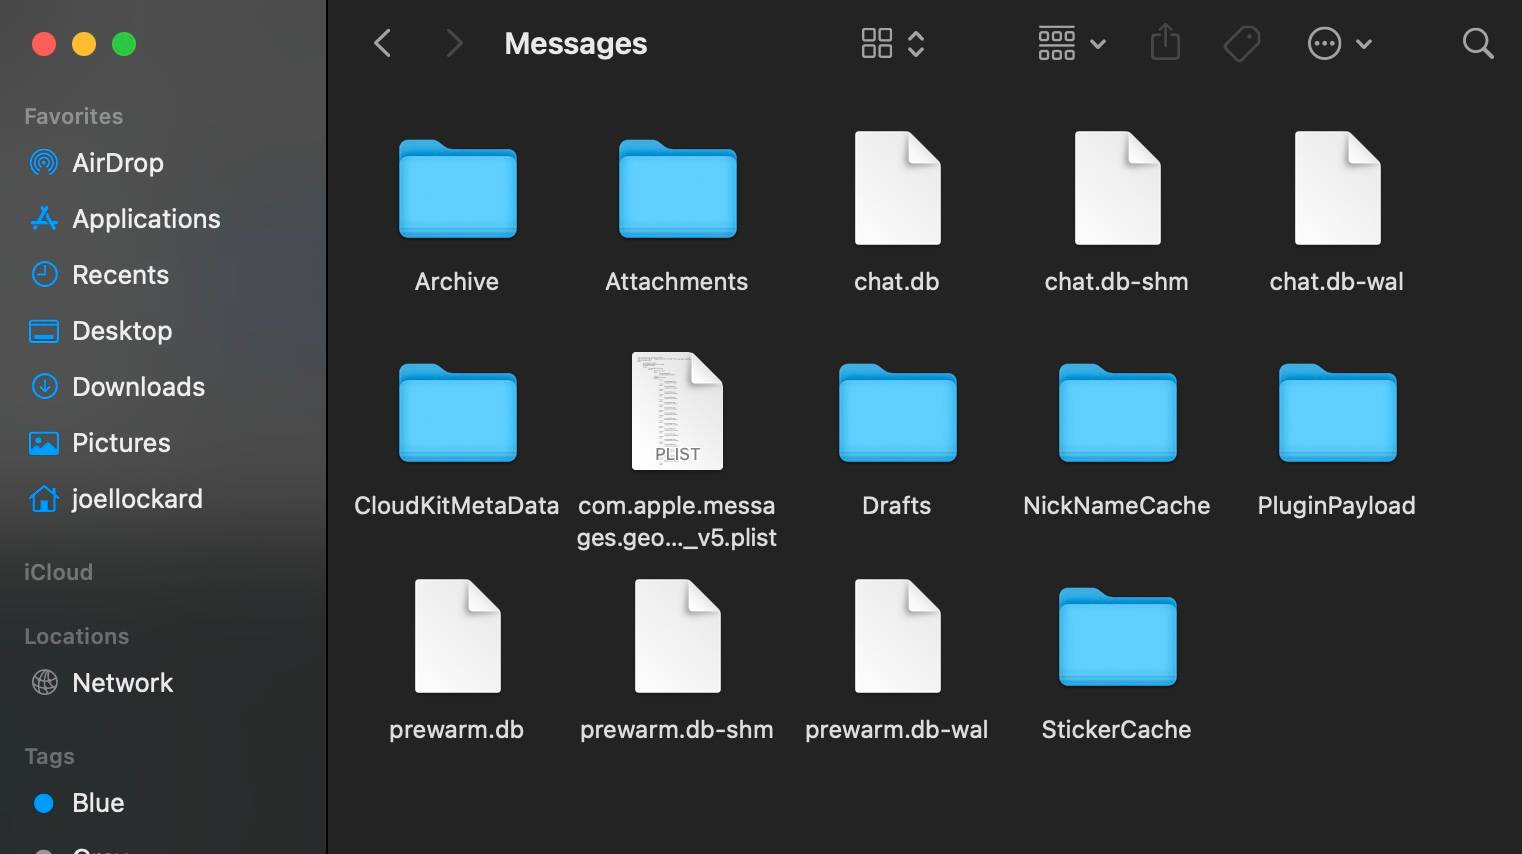 messages-folder-in-finder